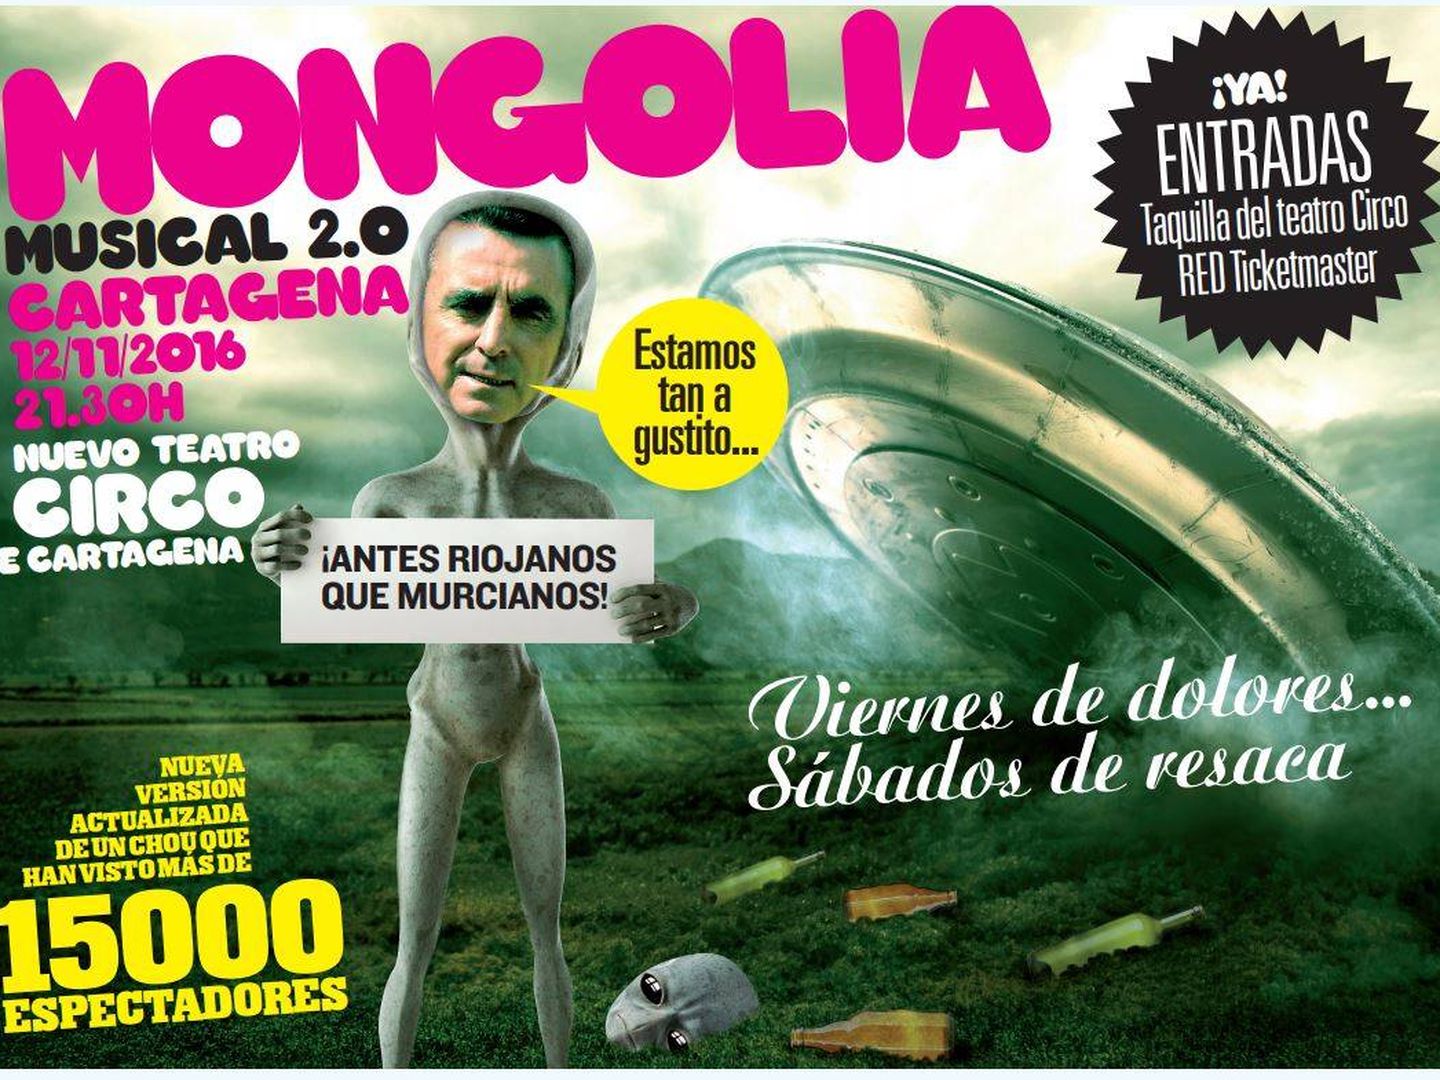 Cartel del musical en Cartagena por el que Ortega Cano ha demandado a Mong SL. (Revista Mongolia)